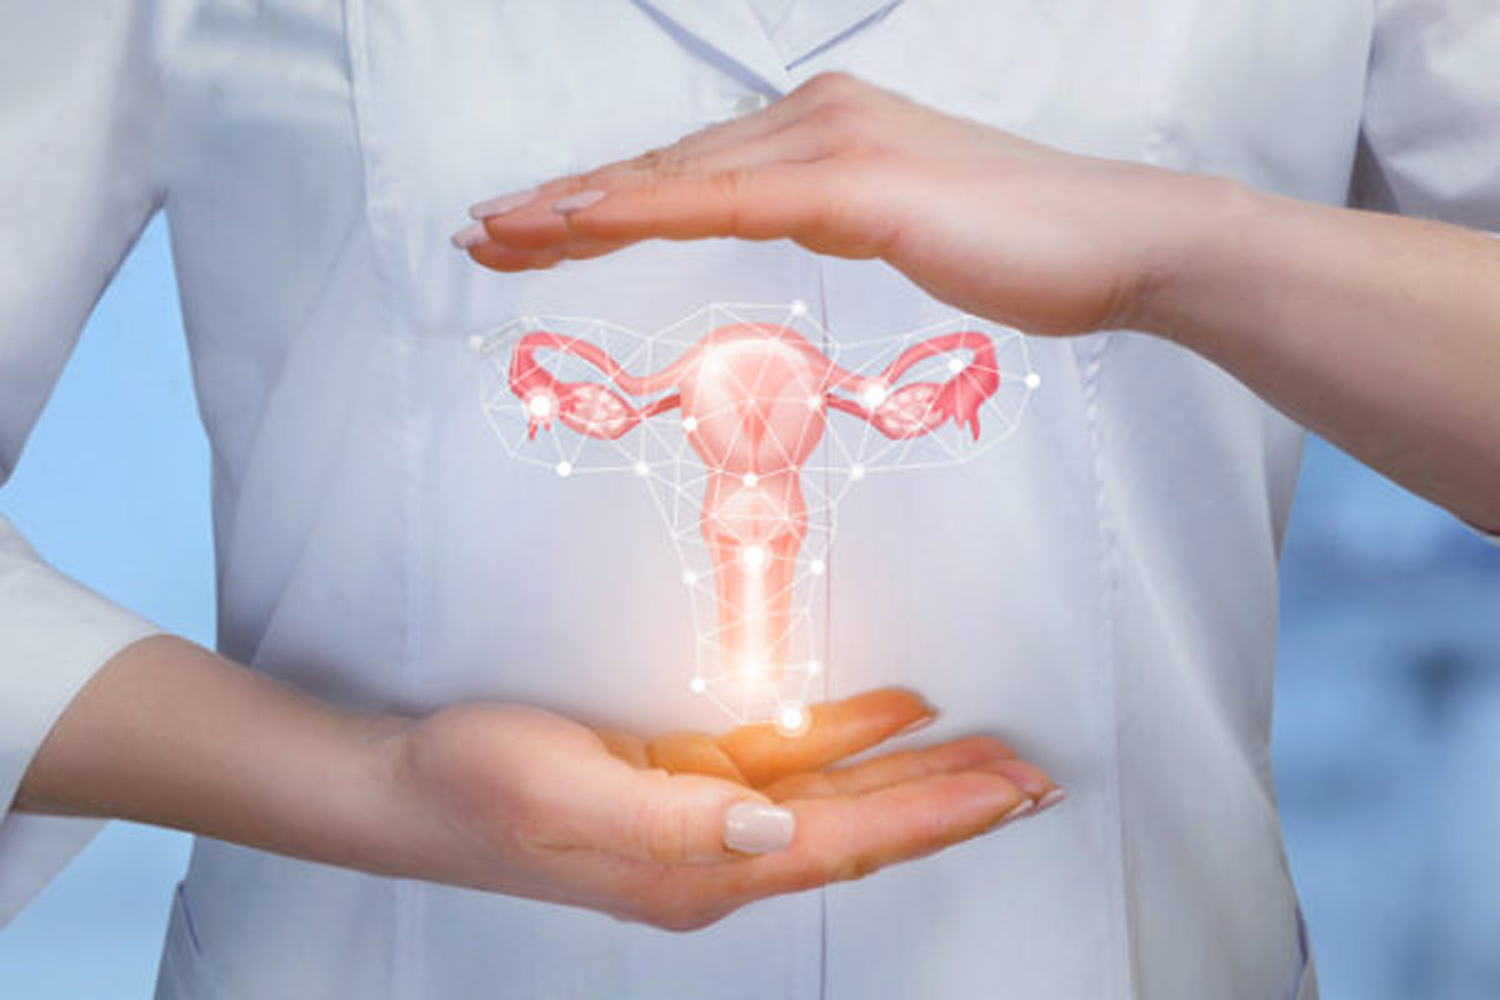 Общие признаки воспалительных заболеваний женских репродуктивных органов